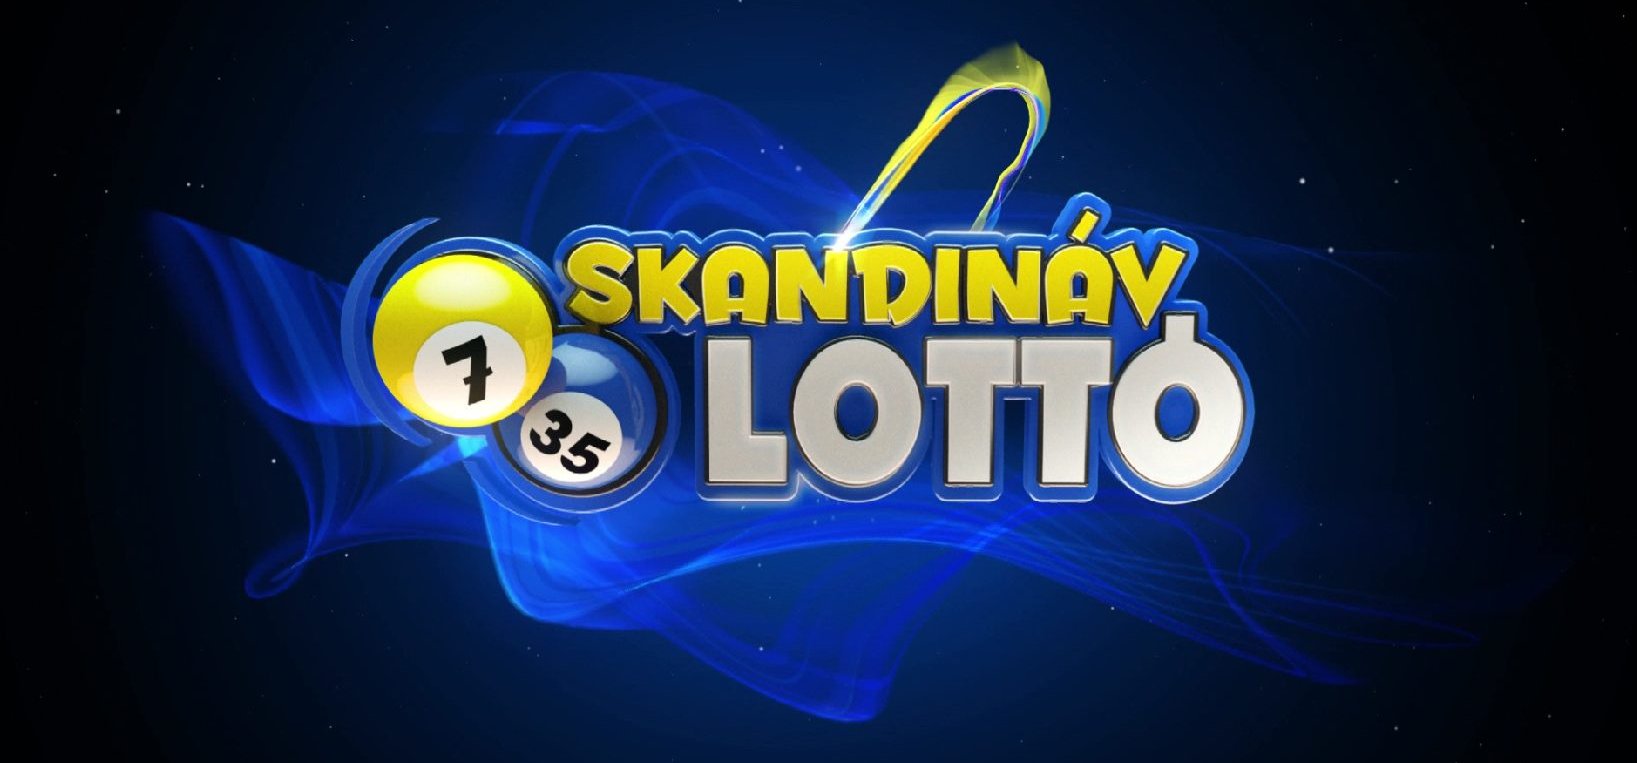 Skandináv lottó: megvan egymás után az ötödik telitalálatos szelvény Magyarországon, vagy megszakadt a széria? Mutatjuk a nyerőszámokat